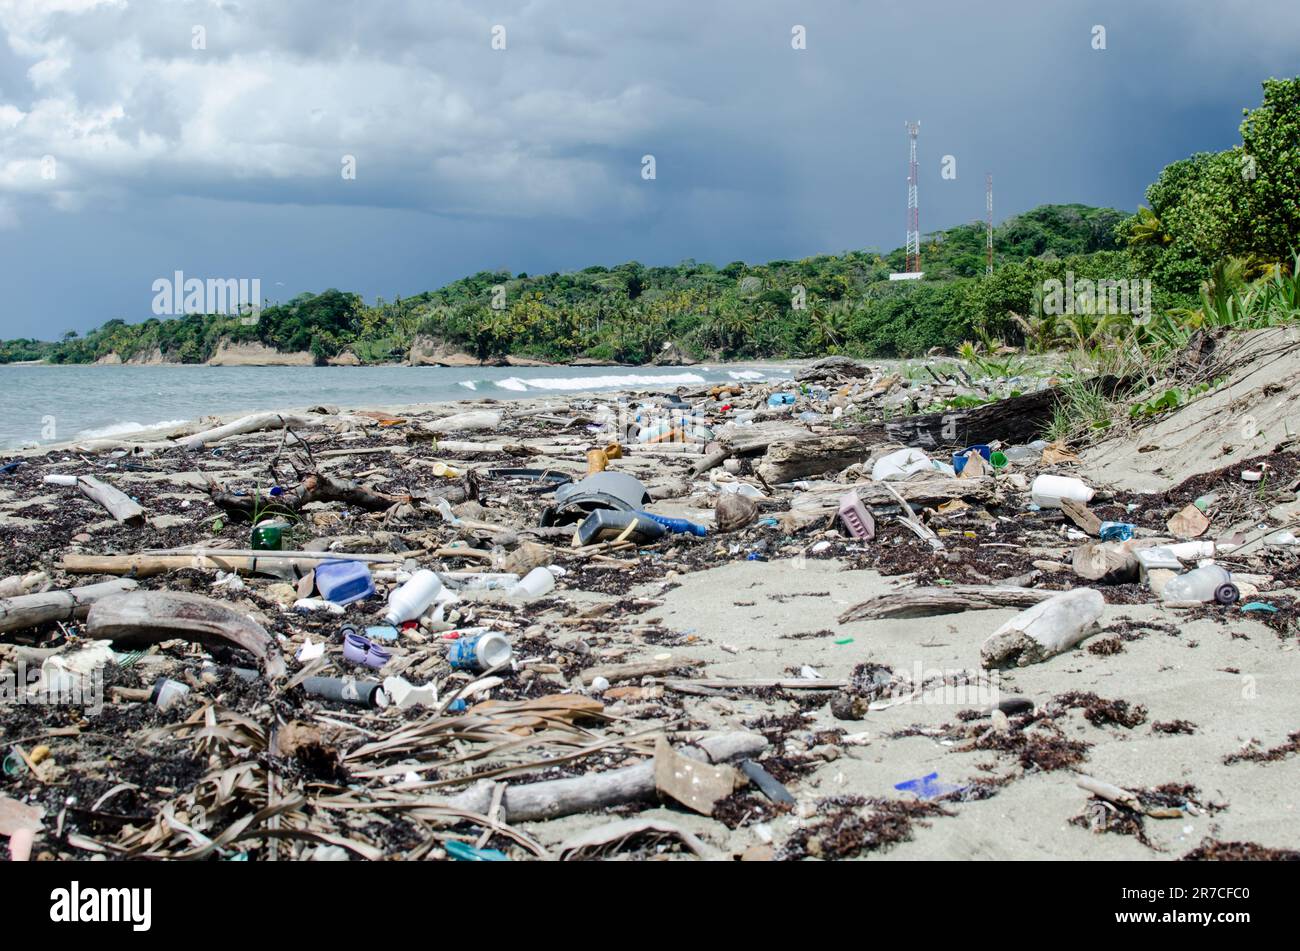 Une plage peu visitée fortement contaminée par des plastiques dans la province de Colón, sur la côte des Caraïbes du Panama. Banque D'Images